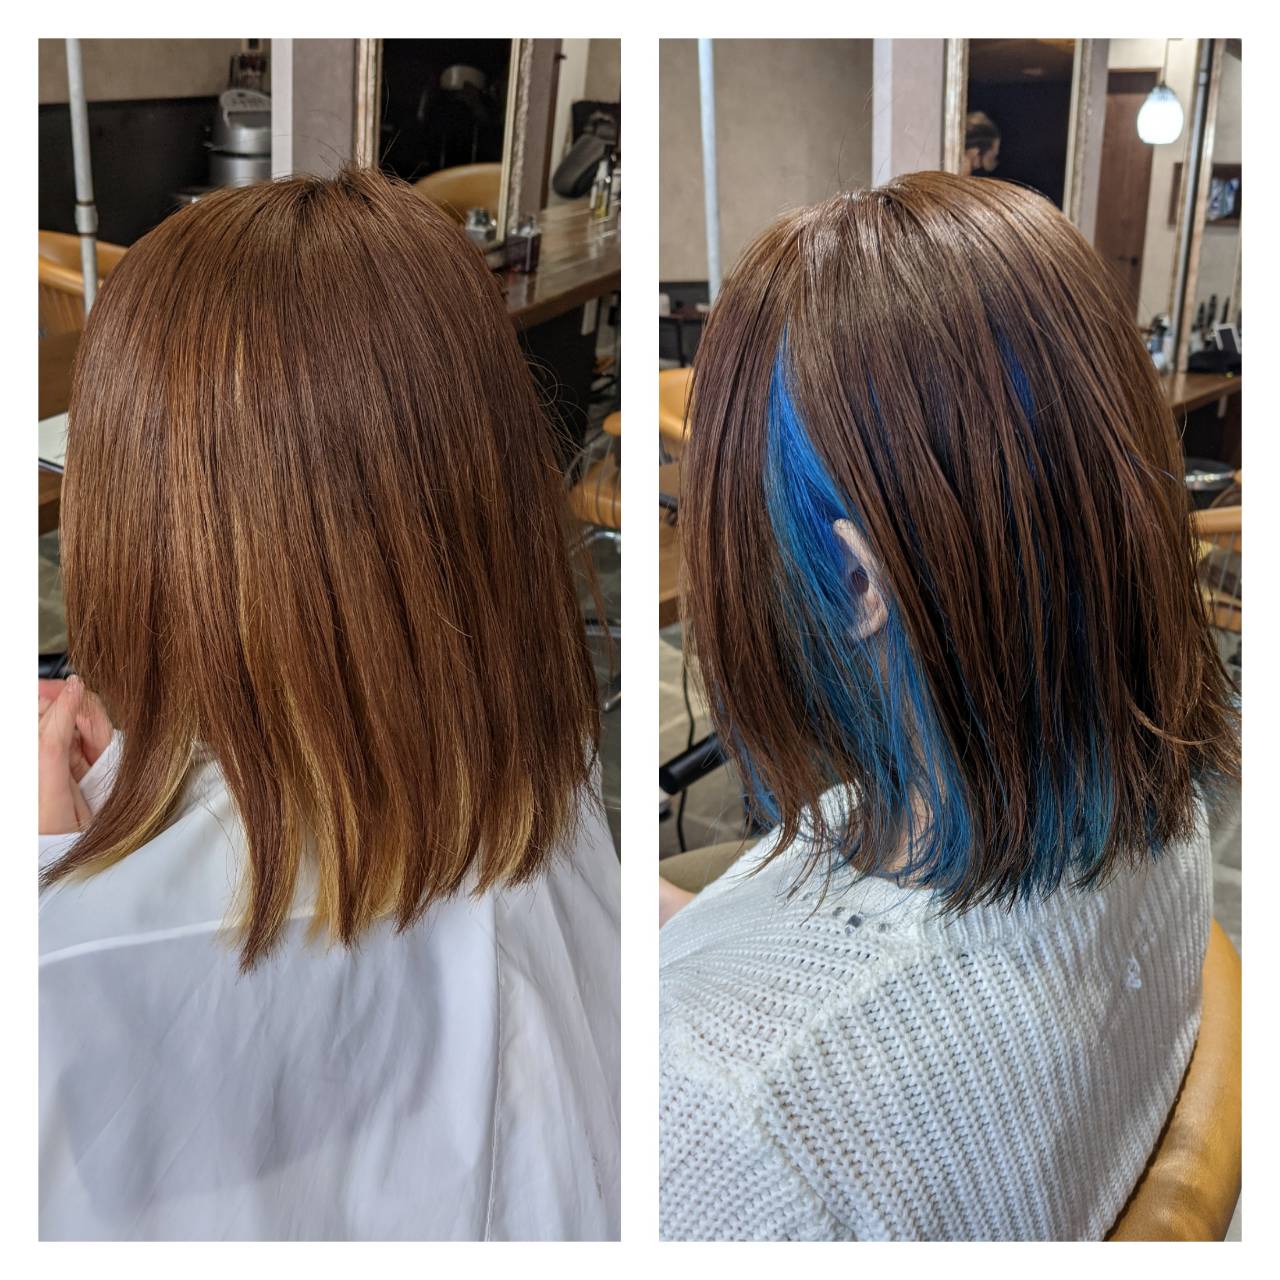 インナーカラー ブルーに染める方法 ブリーチオンカラーの染め方 横浜 鶴ヶ峰 上手い 得意 美容師 美容室 ヘアサロン Enx